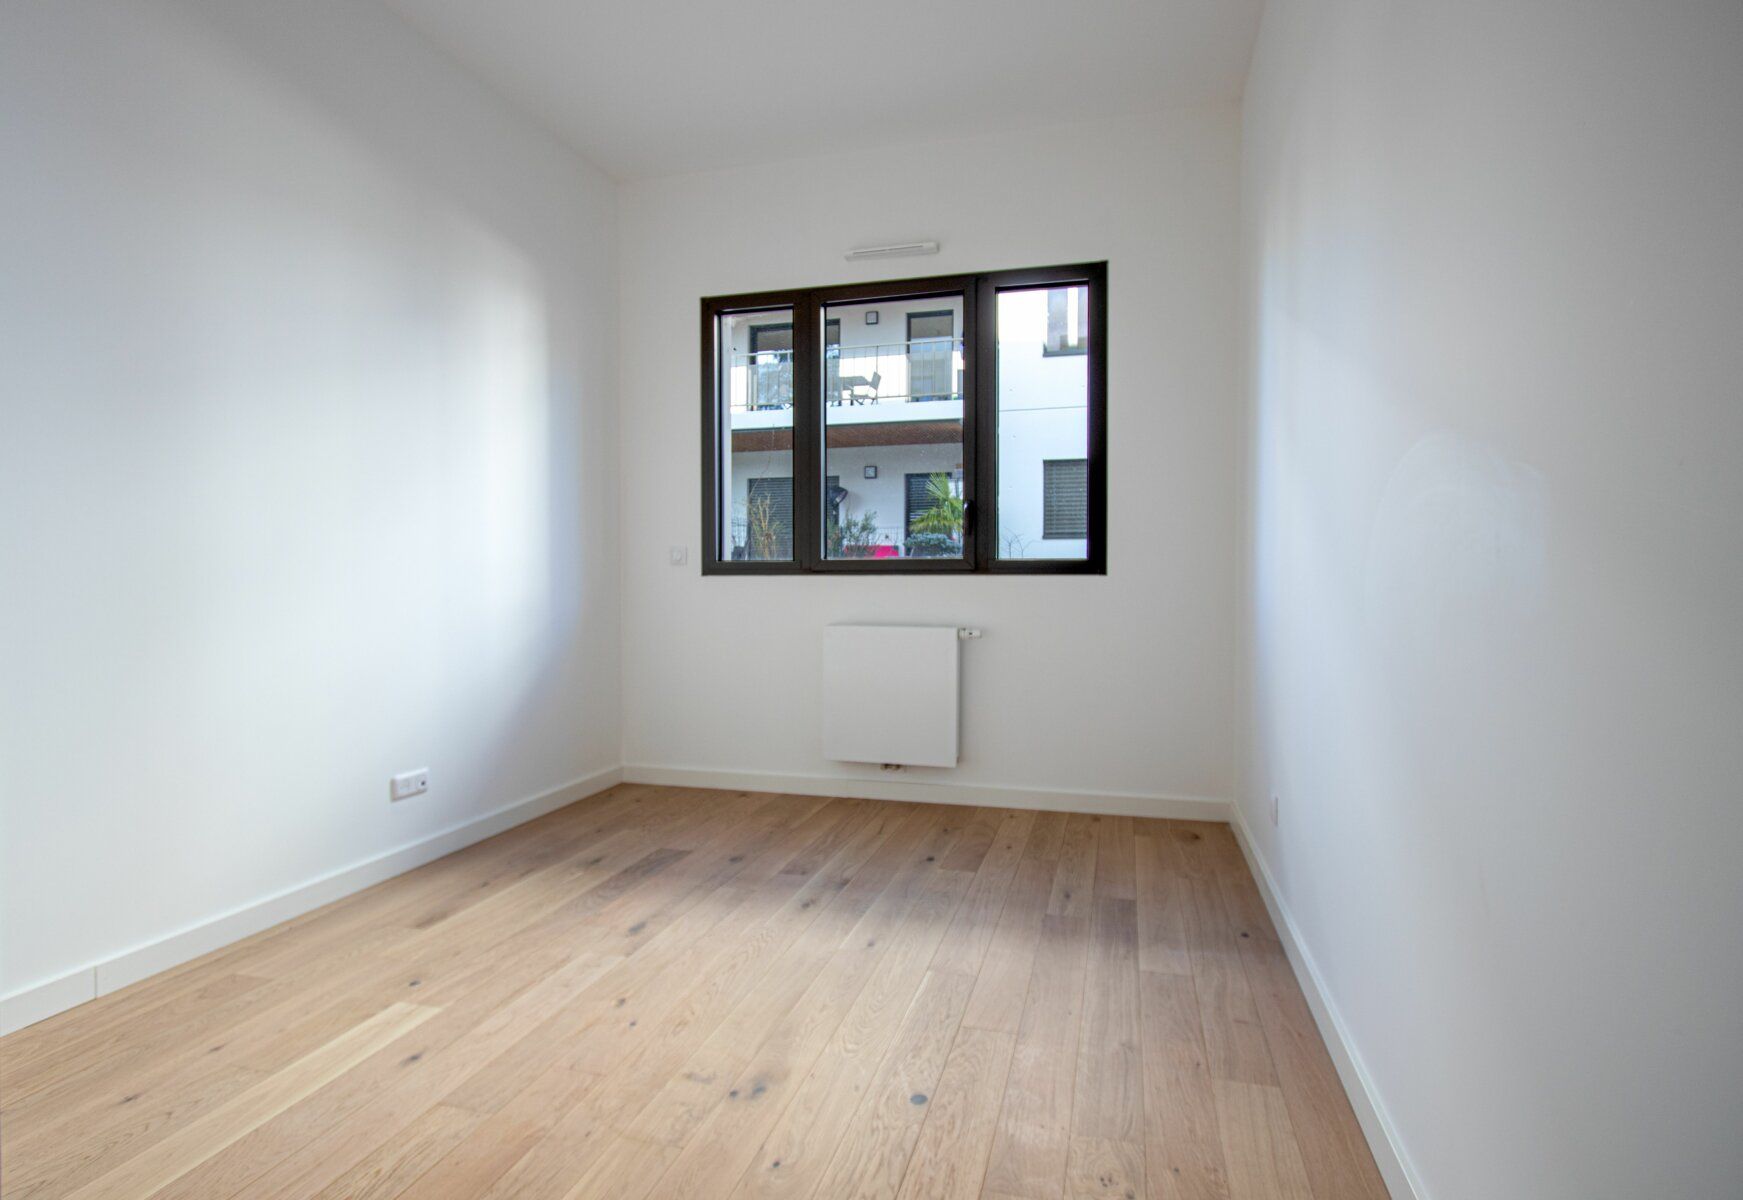 Appartement à vendre 4 96.6m2 à Sainte-Foy-lès-Lyon vignette-2